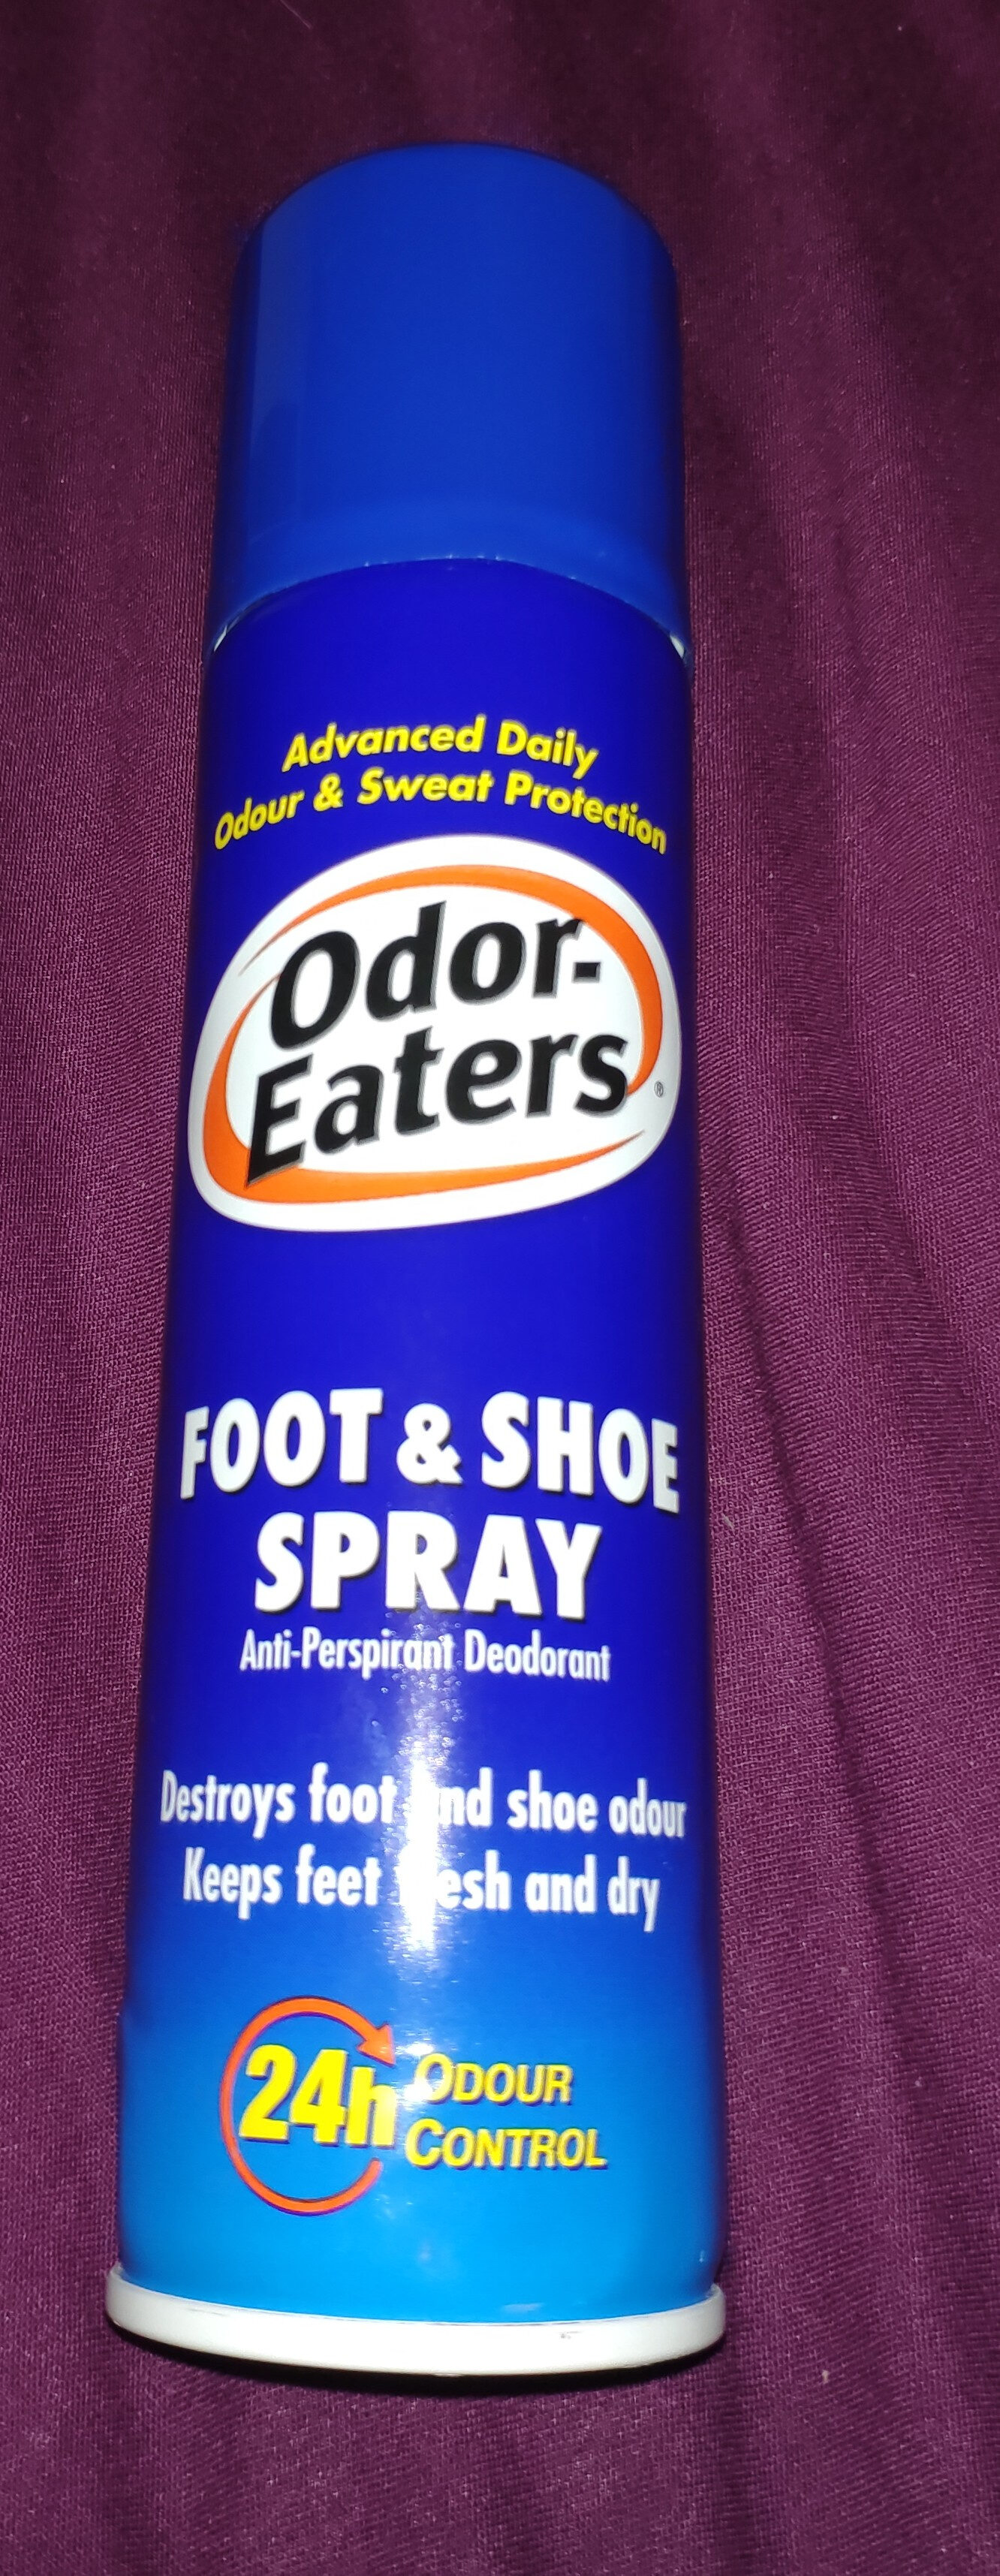 Foot & Shoe Spray Anti-Perspriants Deodorant - Product - en